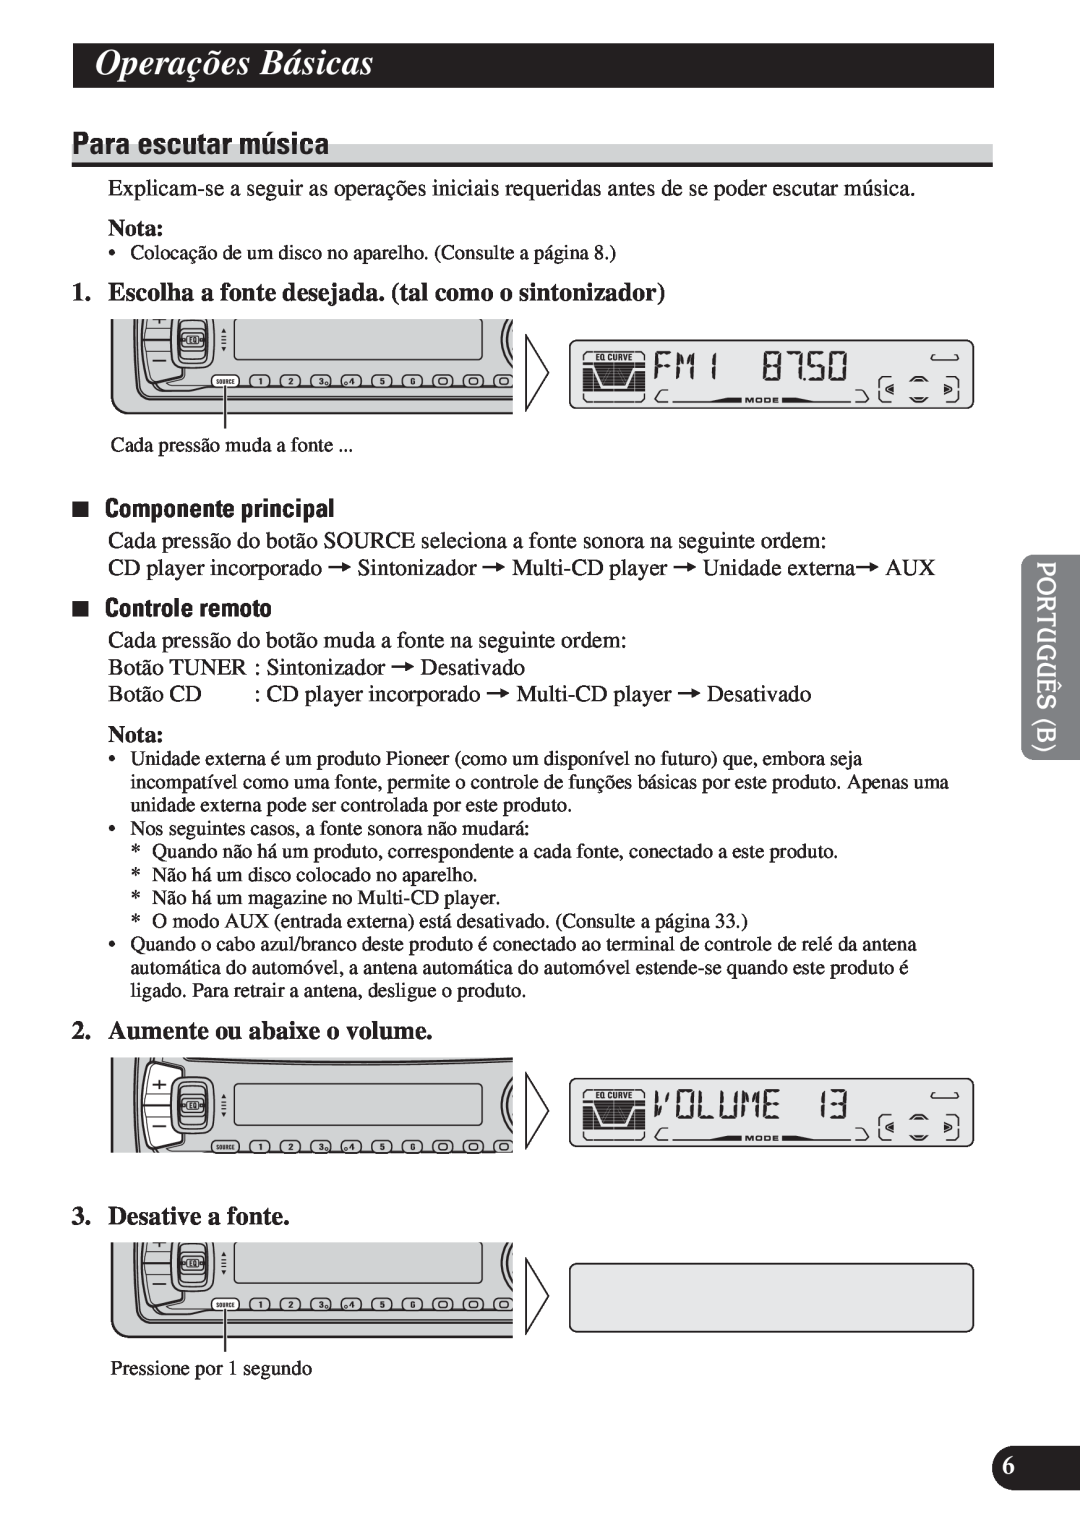 Pioneer DEH-P4150 operation manual Operações Básicas, Para escutar música, 7Componente principal, 7Controle remoto, Nota 